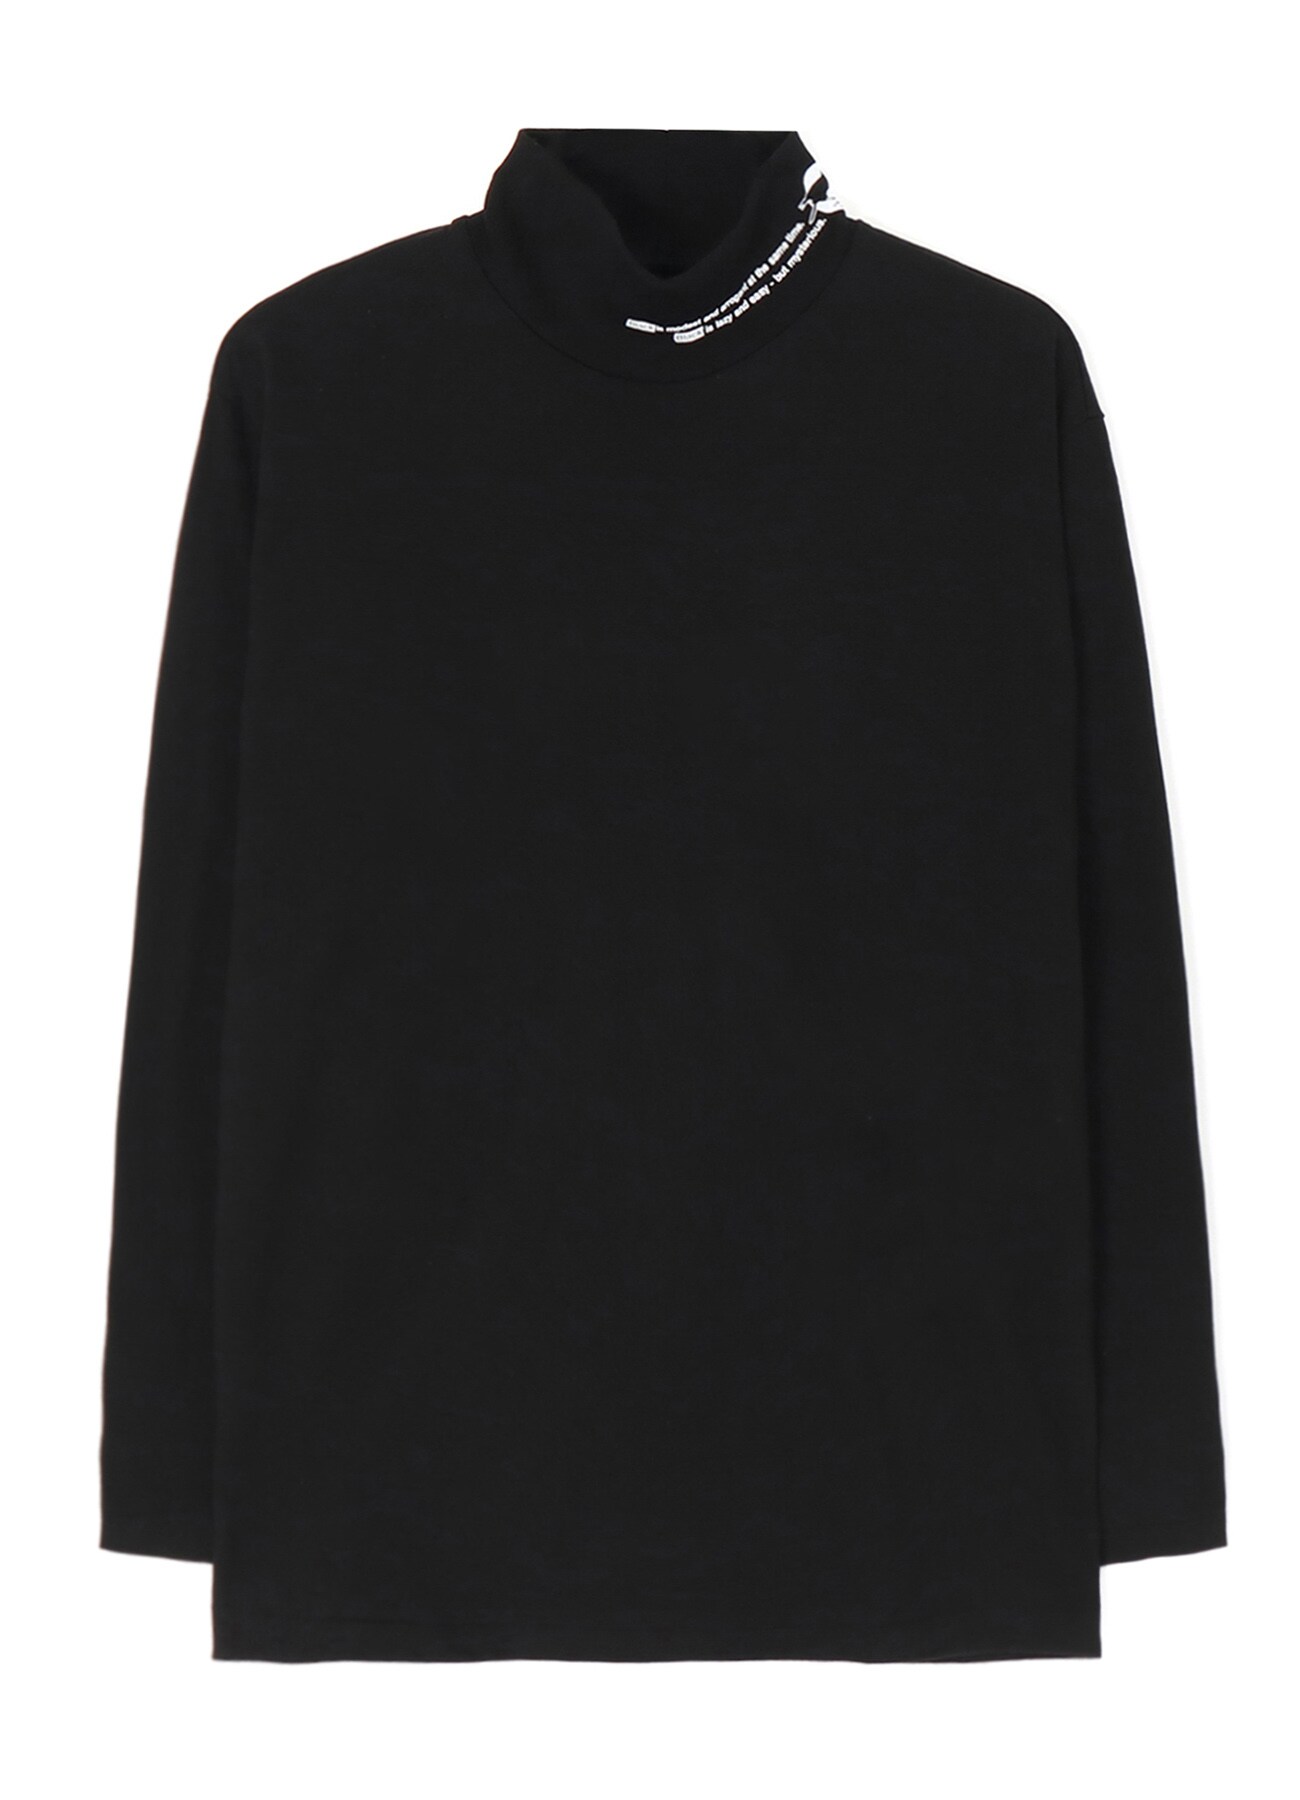 20/Cotton Jersey「Black Is Modest」High Neck T-Shirt